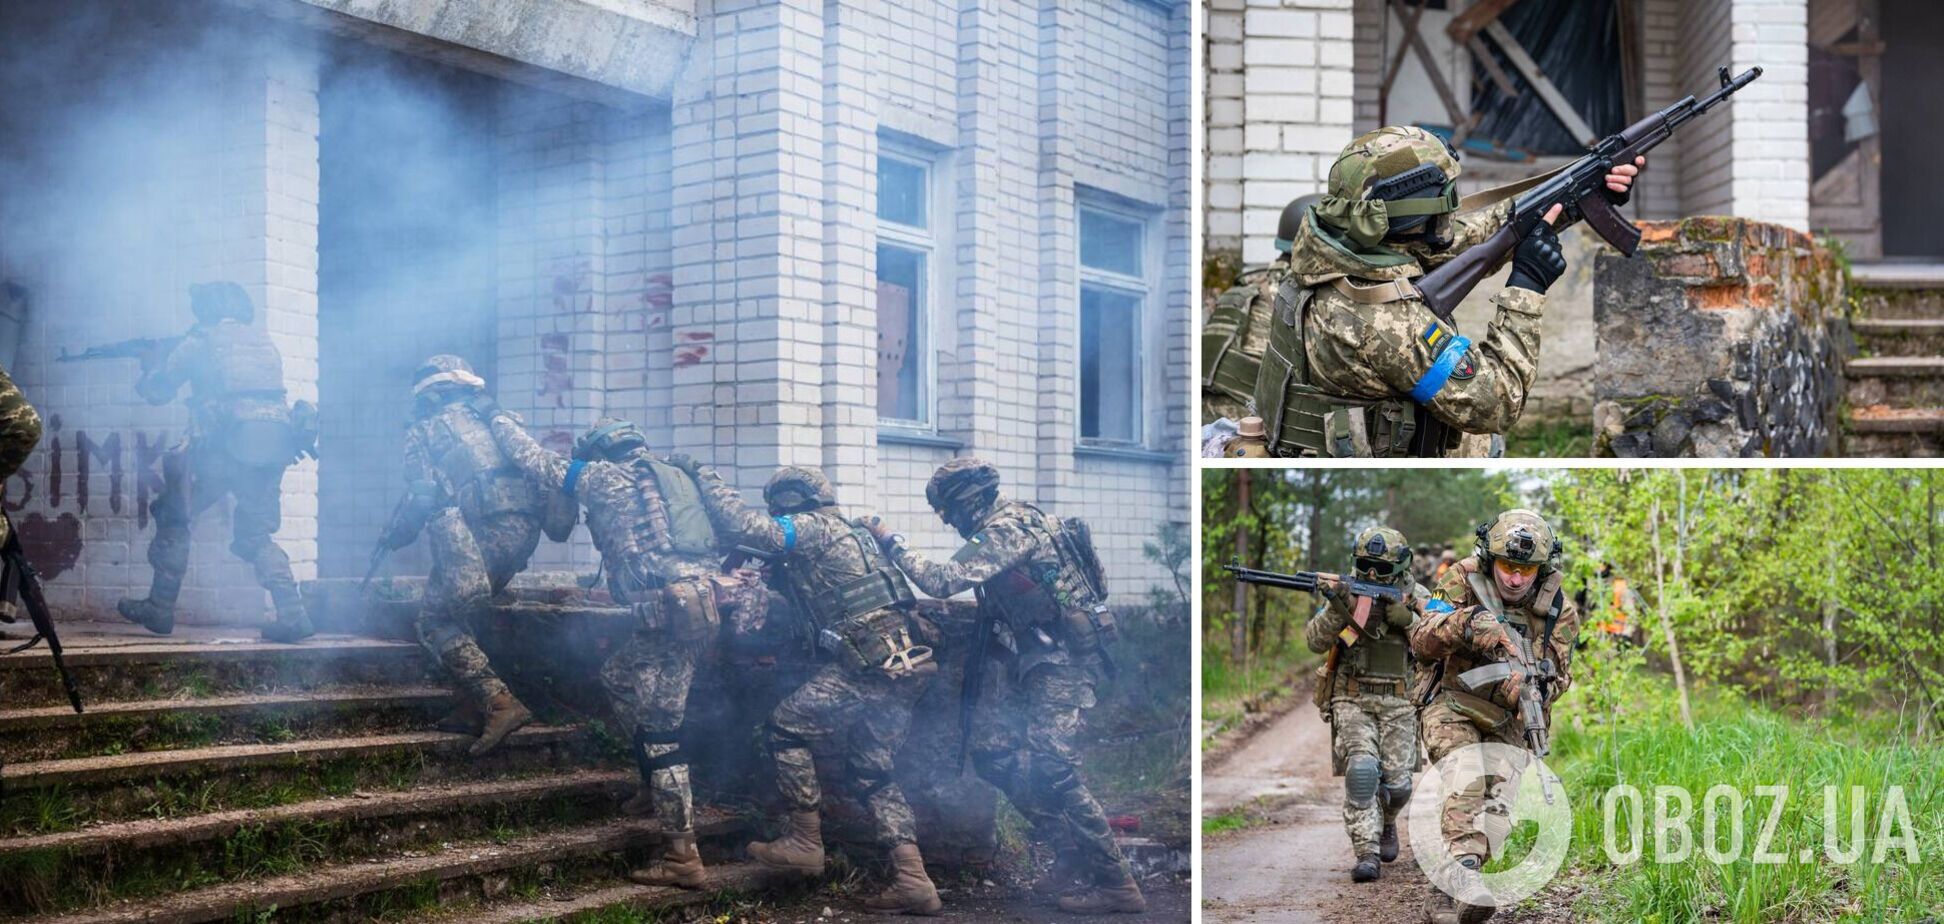 Зачистка домов и эвакуация раненых: Наев показал тактическую подготовку ВСУ в городских условиях. Фото